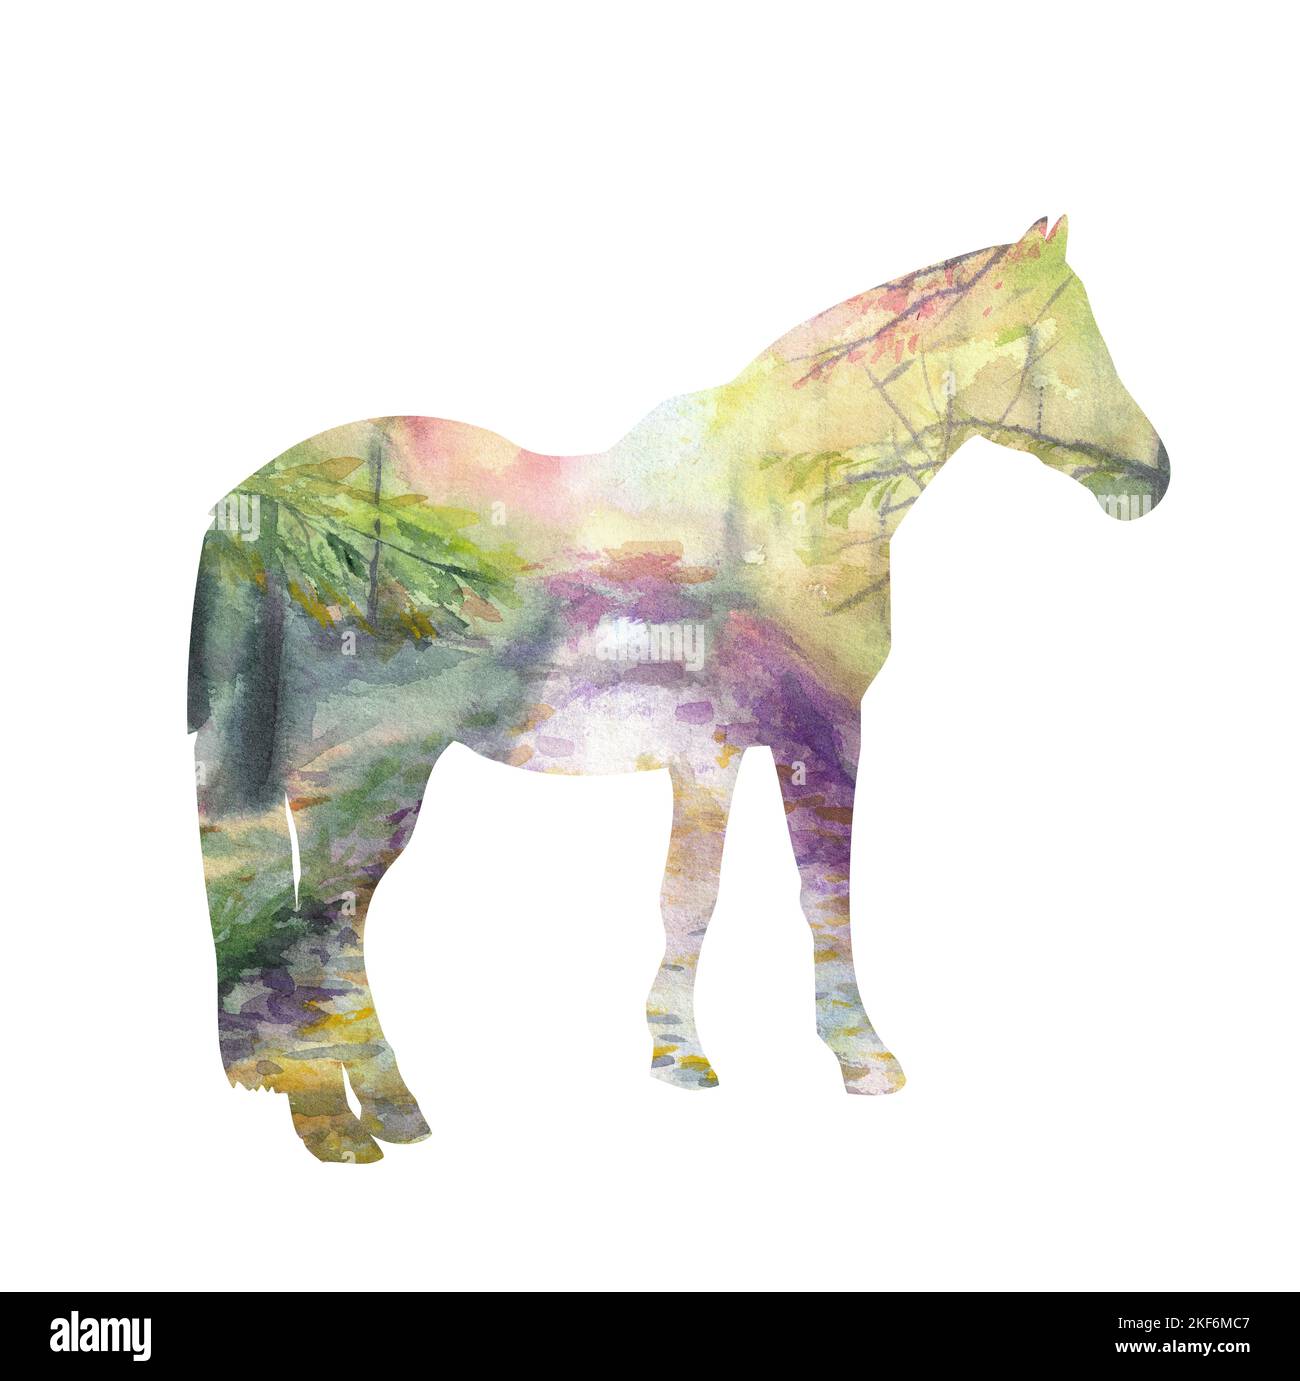 Découpez la silhouette d'un cheval debout avec un motif de forêt aquarelle. Isolé sur fond blanc. Banque D'Images